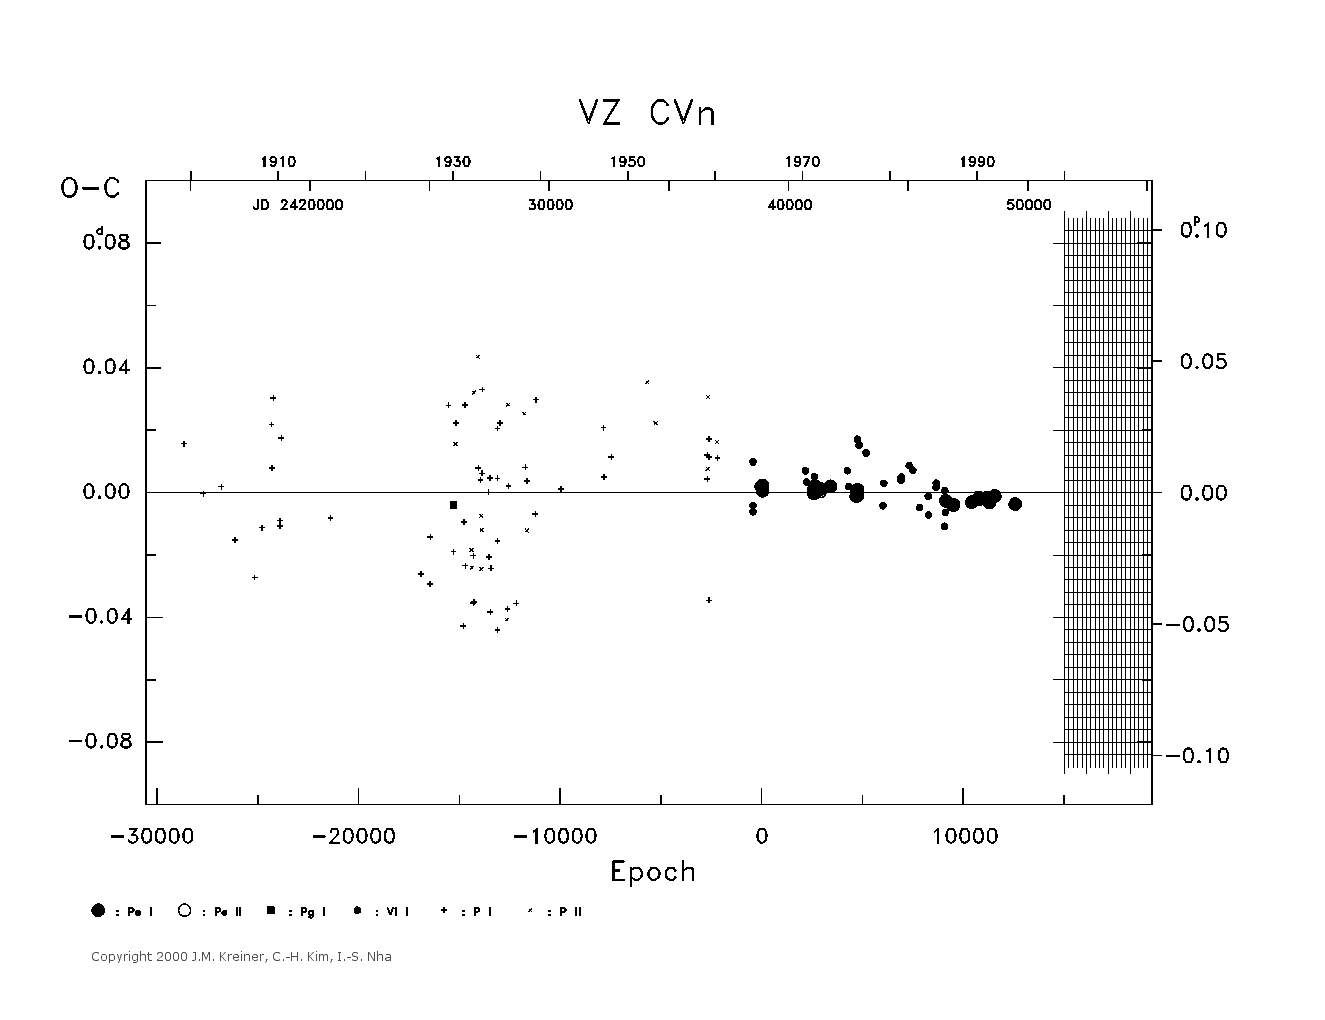 [IMAGE: large VZ CVN O-C diagram]